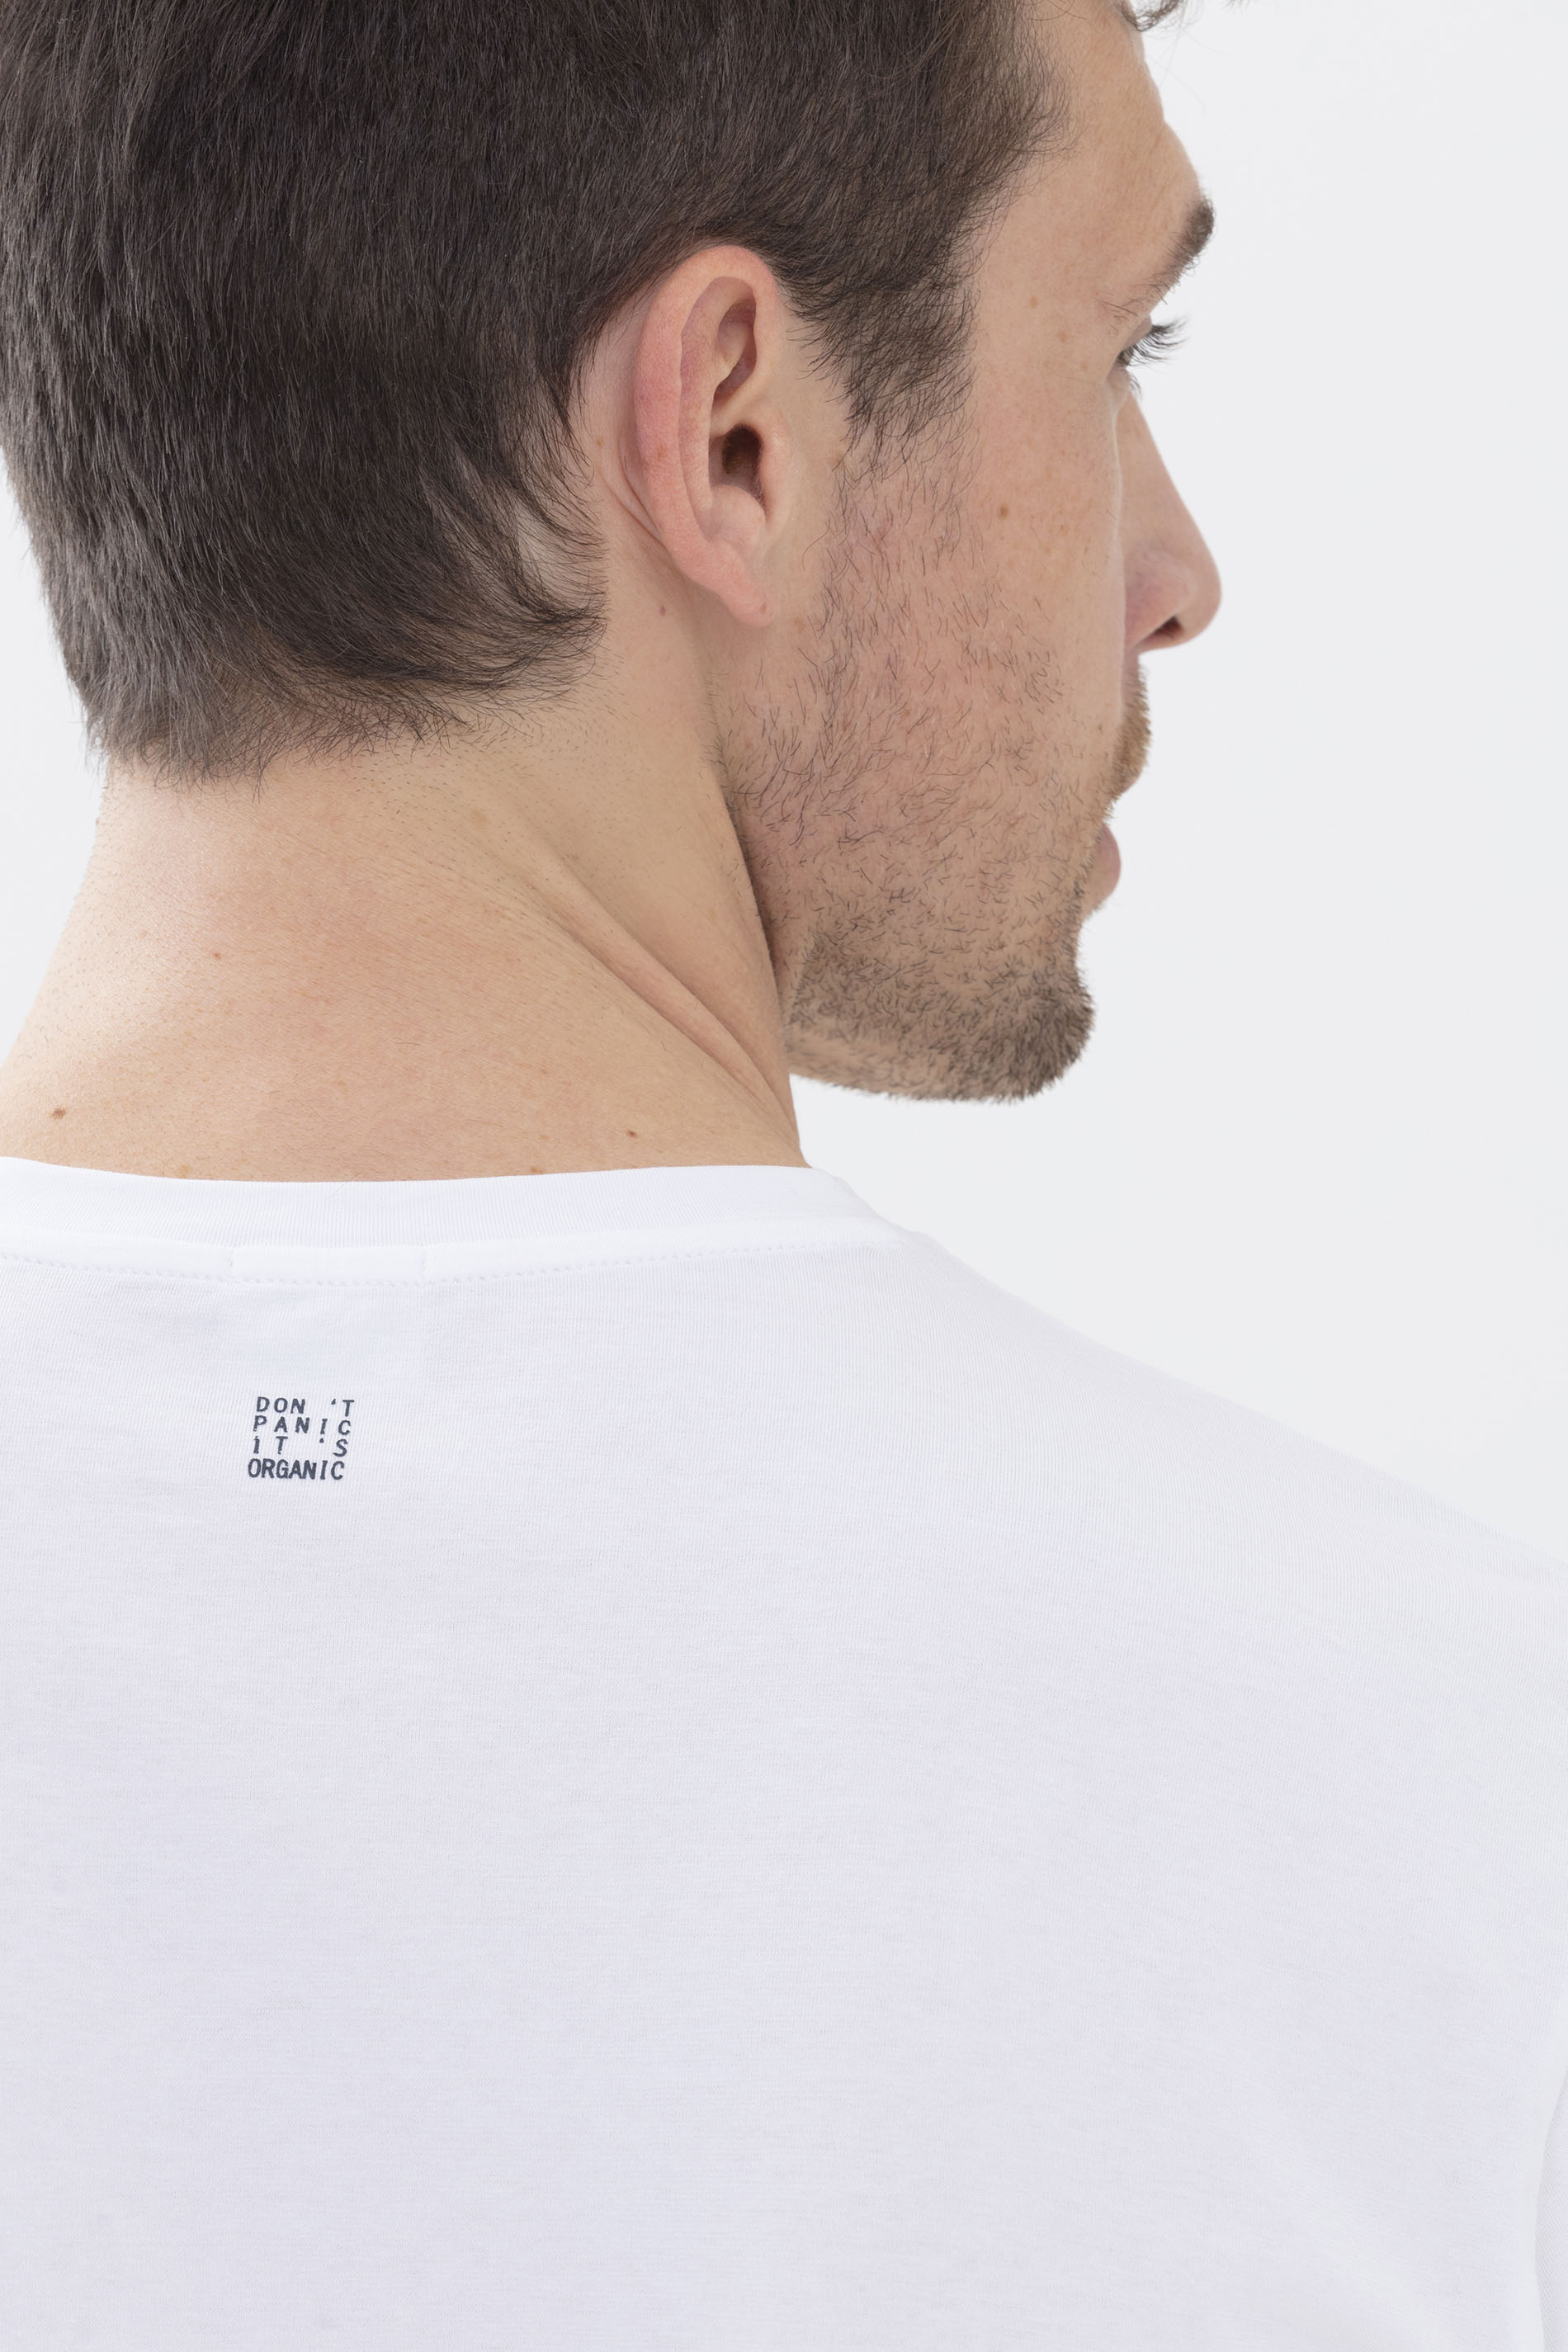 T-Shirt Weiss Serie Relax Detailansicht 01 | mey®